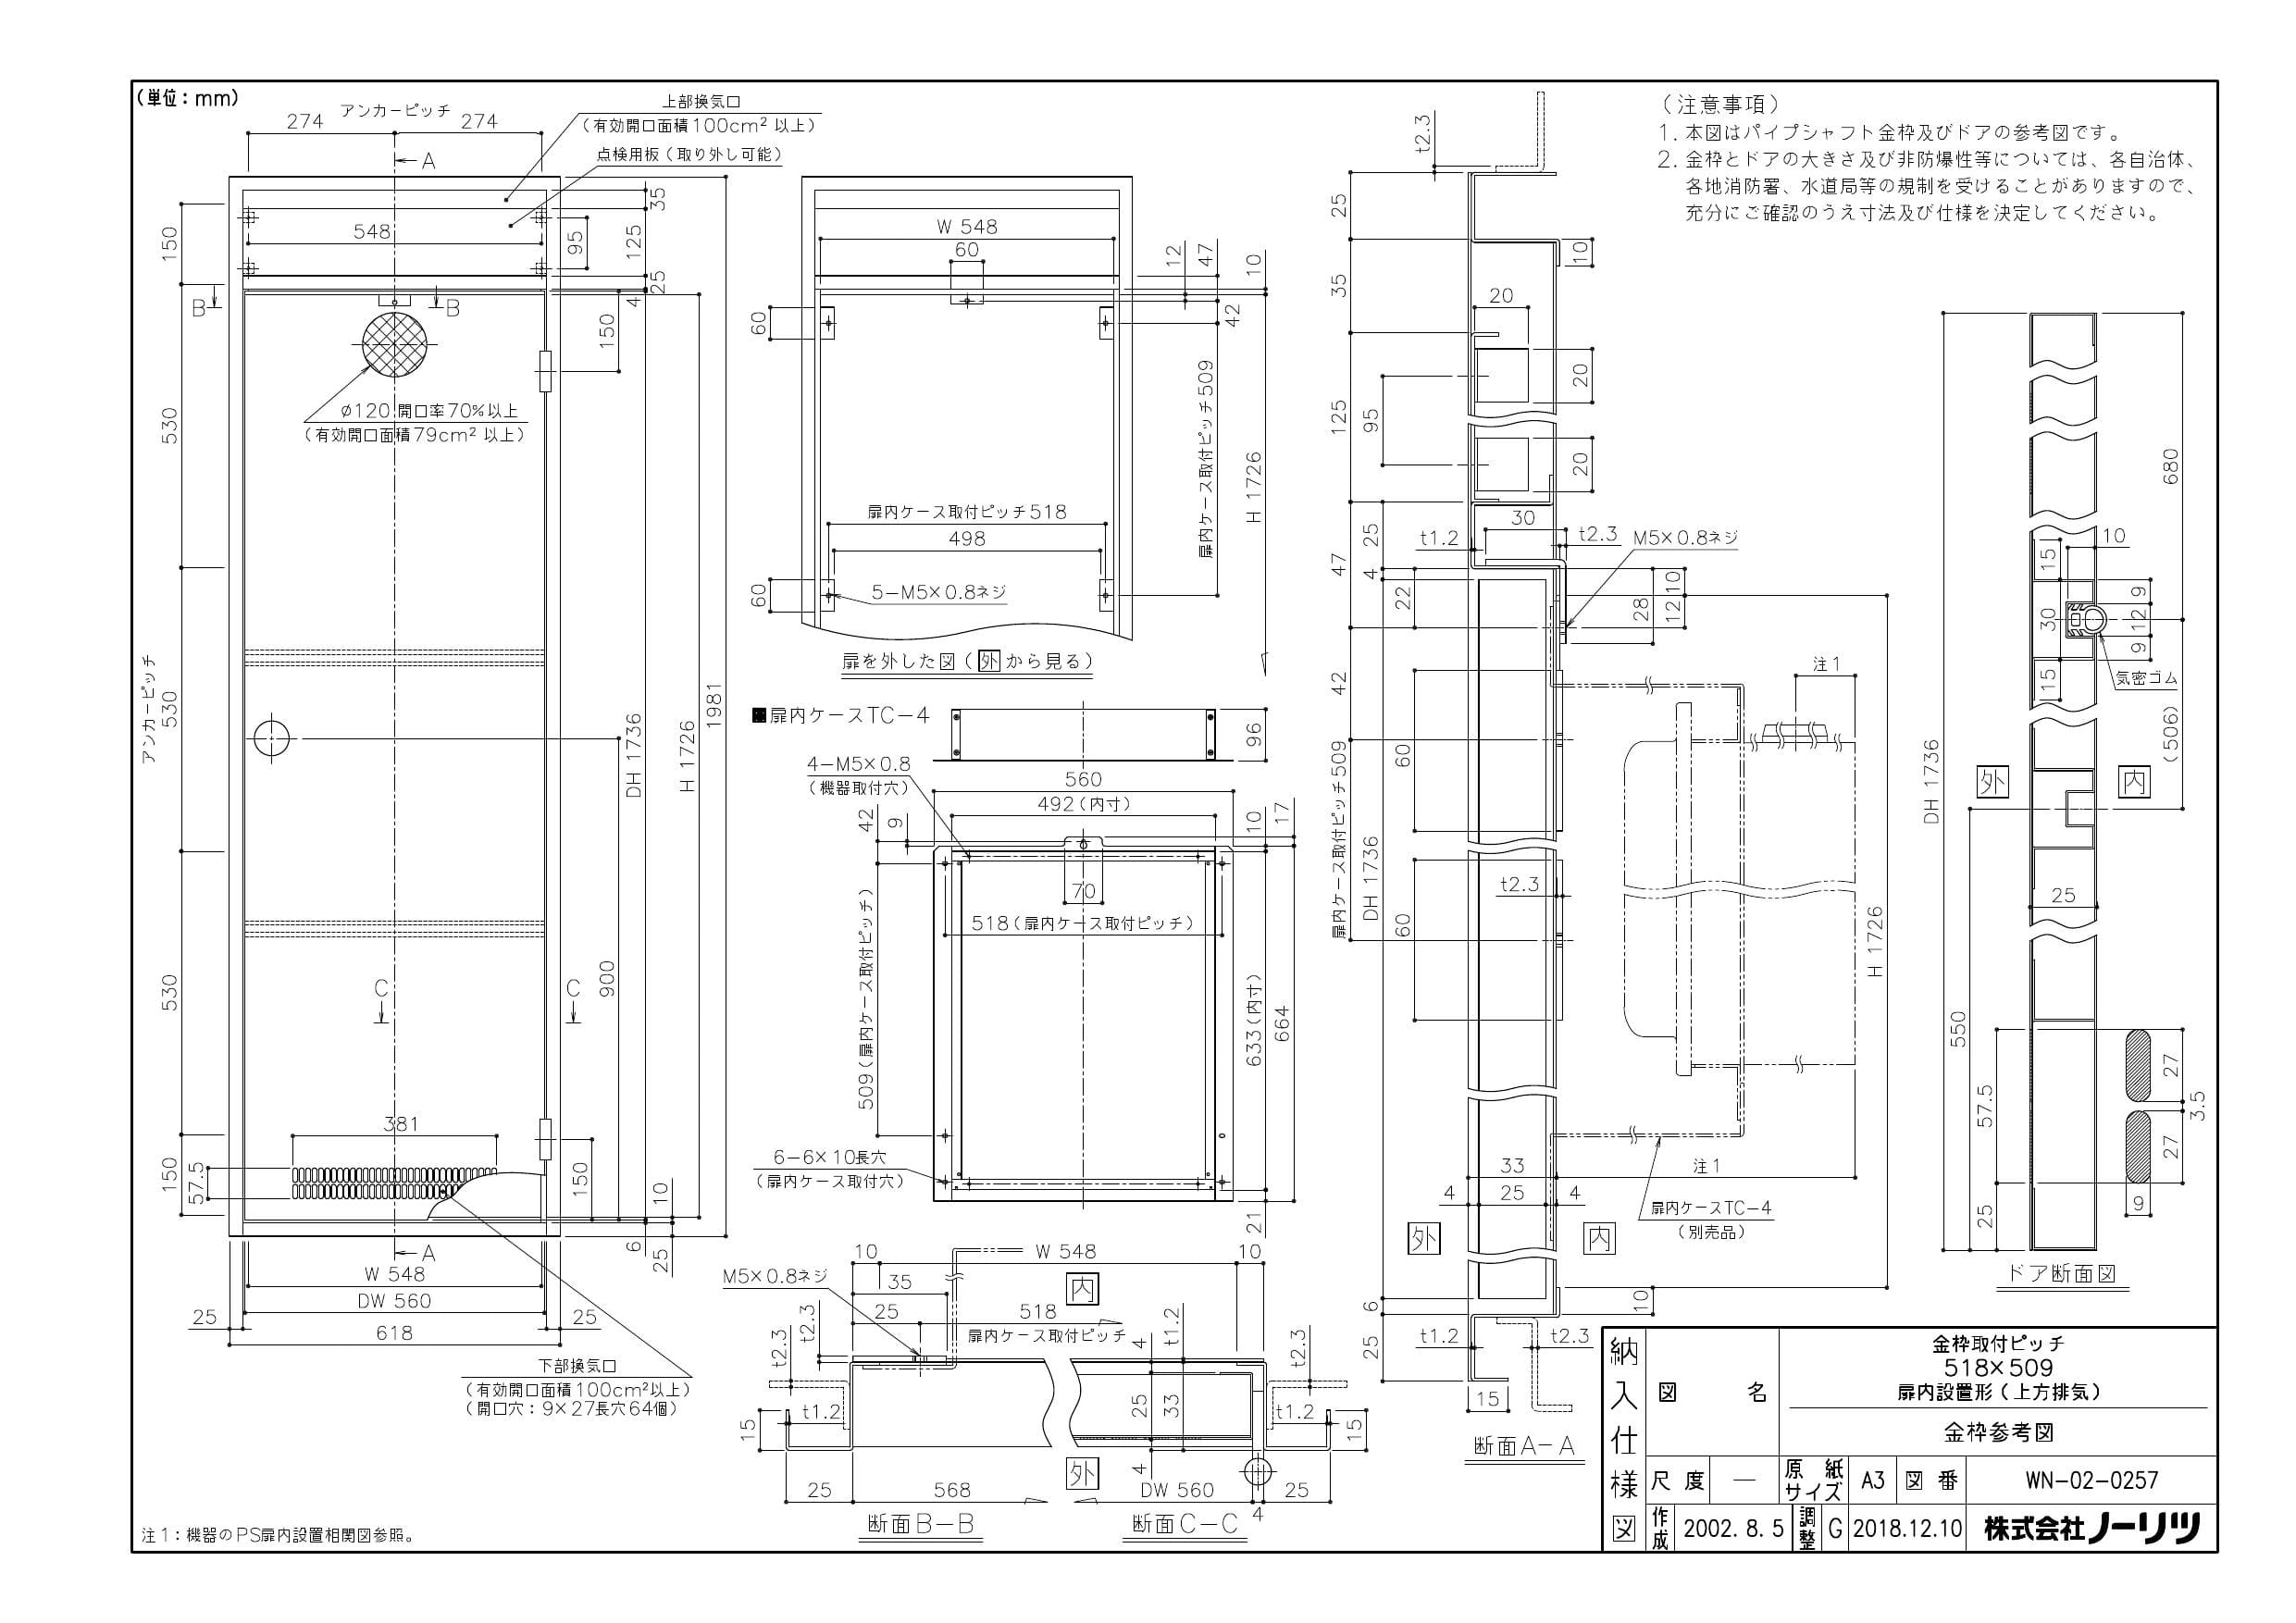 ノーリツ GT-2060SAWX-H-1 BL 納入仕様図 | 通販 プロストア ダイレクト